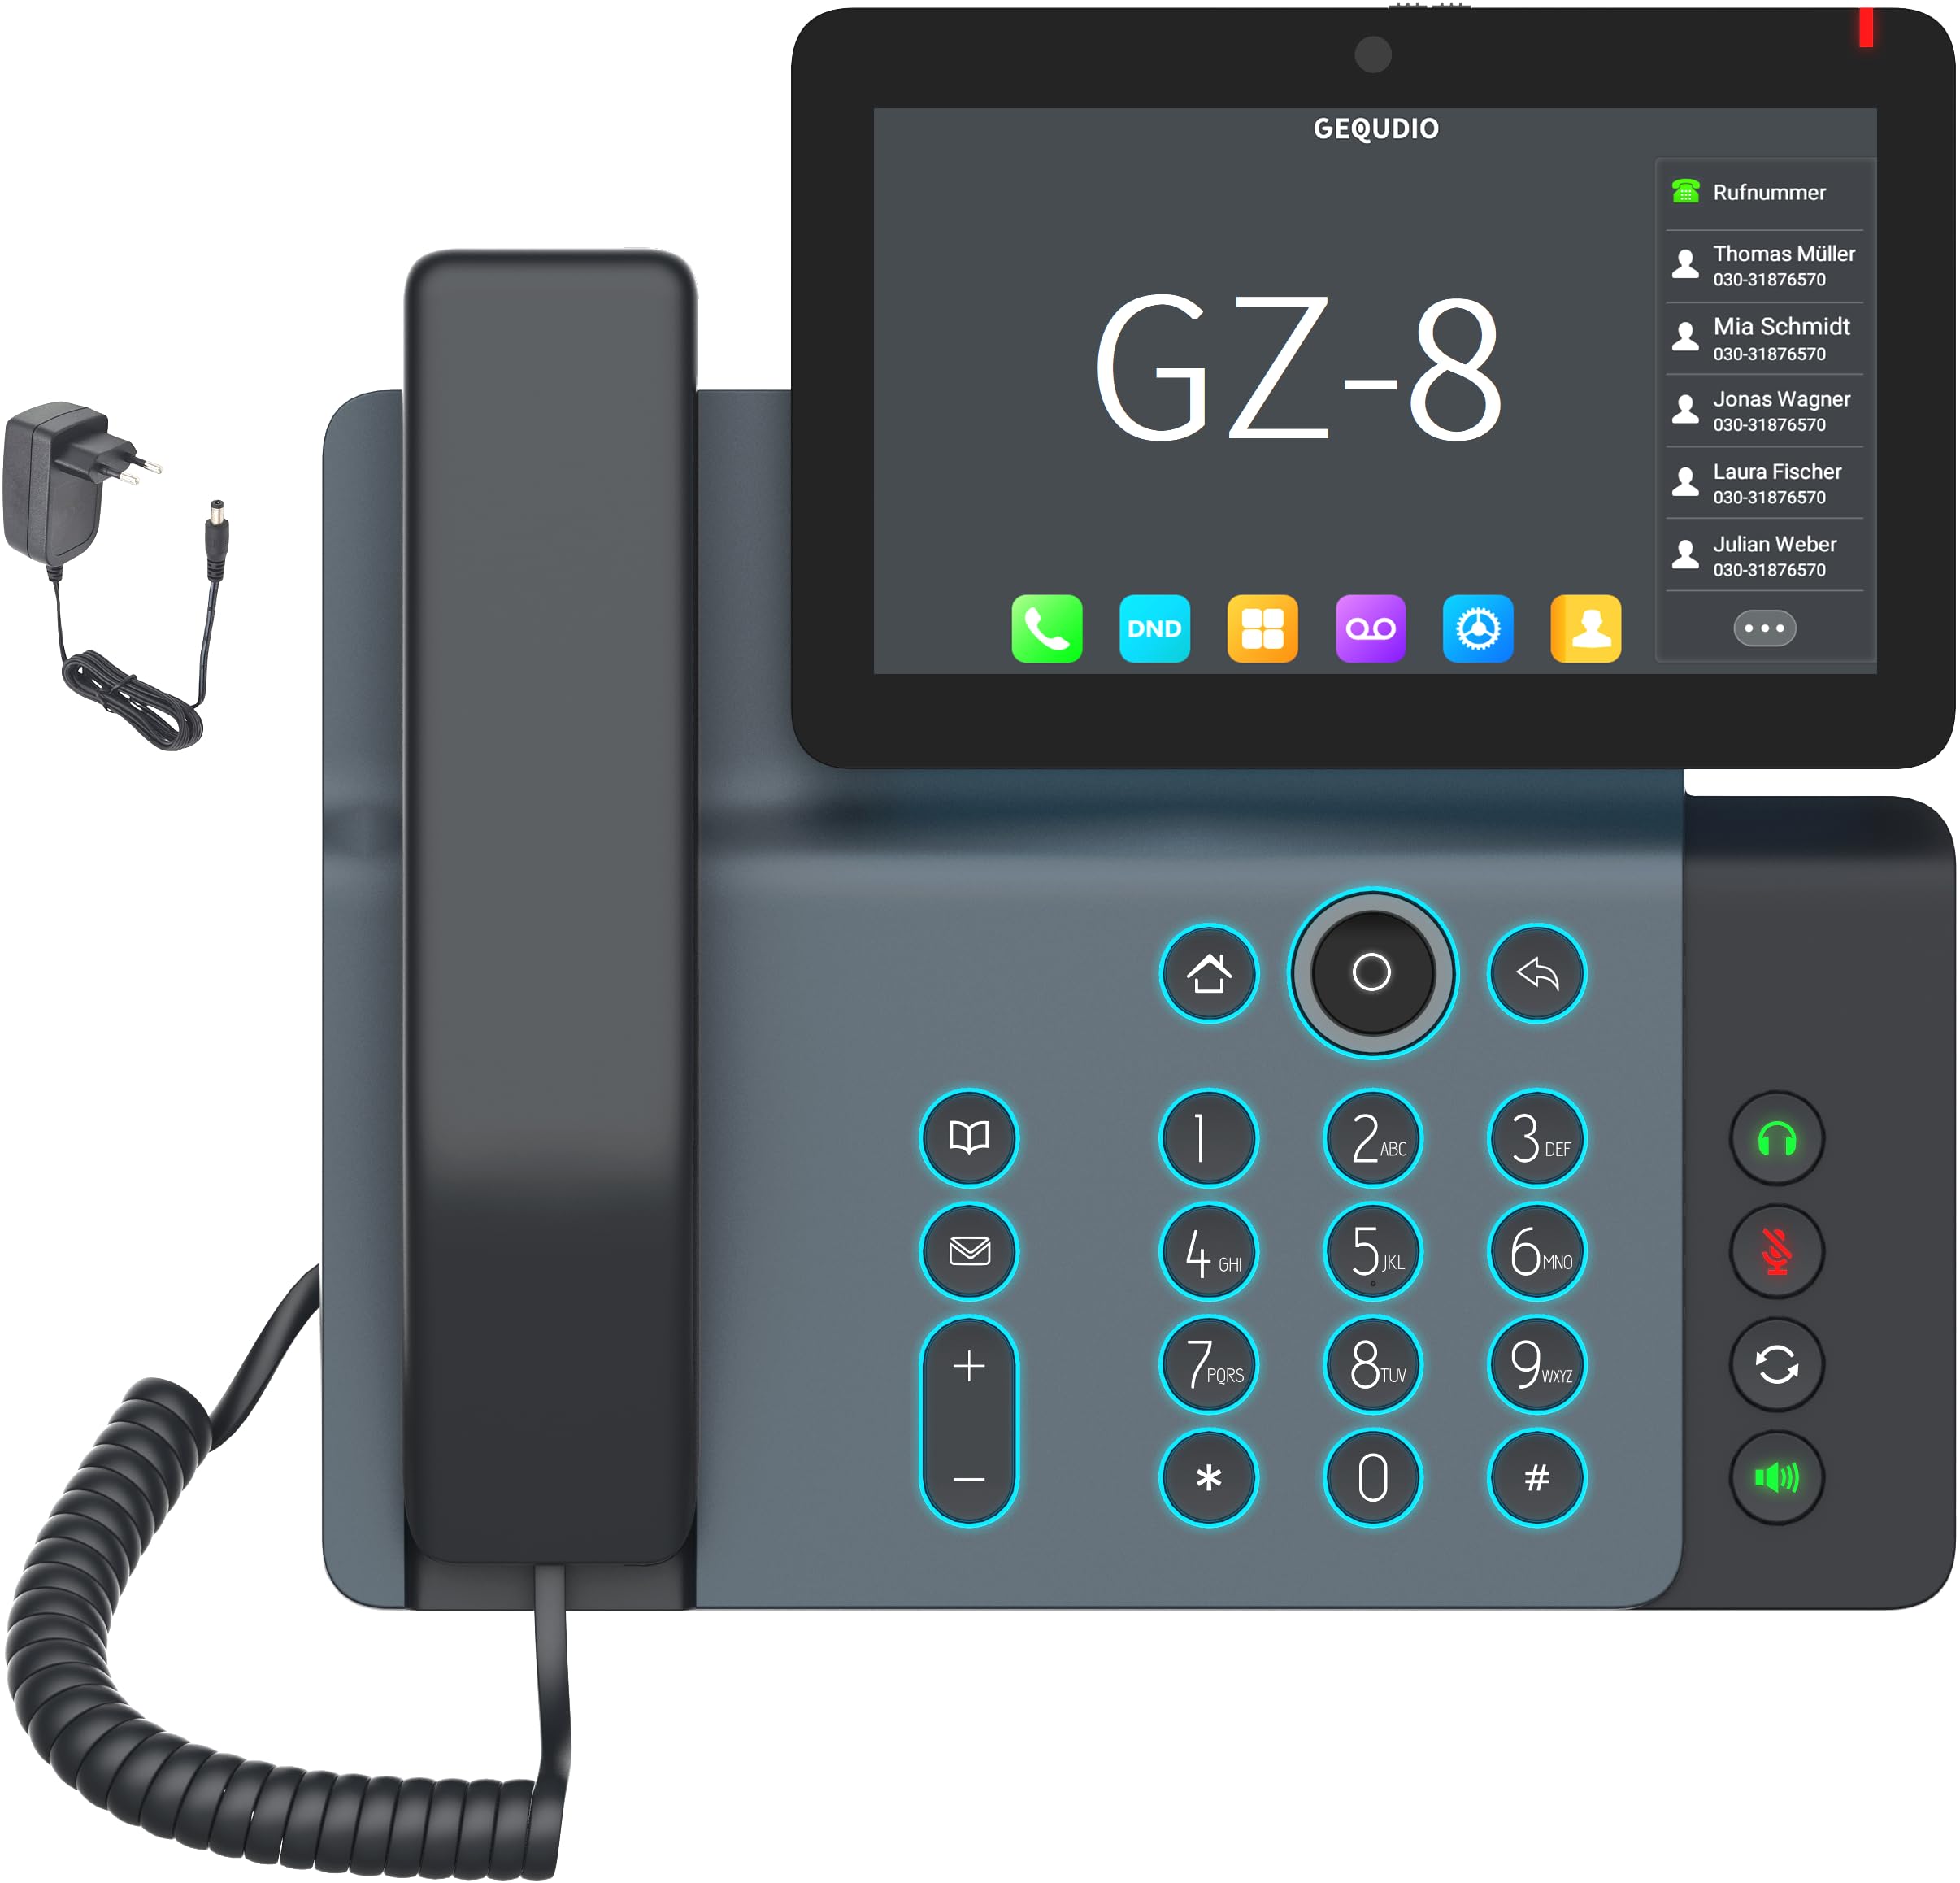 GEQUDIO High-End IP Telefon GZ-8 mit Netzteil - Fritzbox, Telekom kompatibel - Beleuchtete Tastatur & Touchdisplay - Anleitung für Fritz!Box Telefonanlage, Sipgate, Telekom, Speedport - WLAN Bluetooth